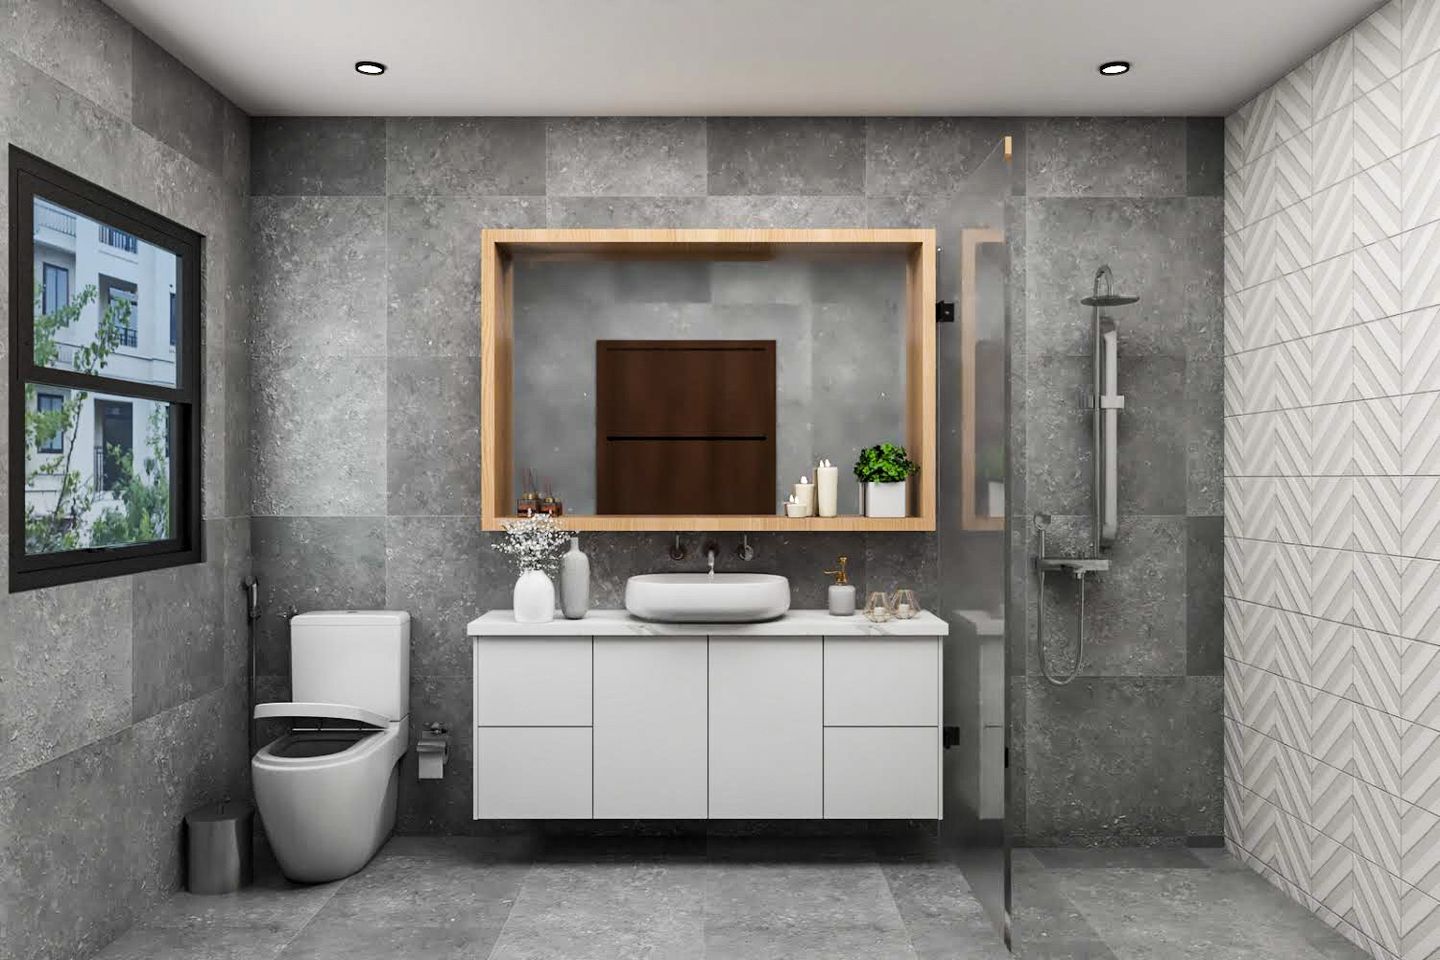 Grey Bathroom Design With Patterned Tiling - Livspace